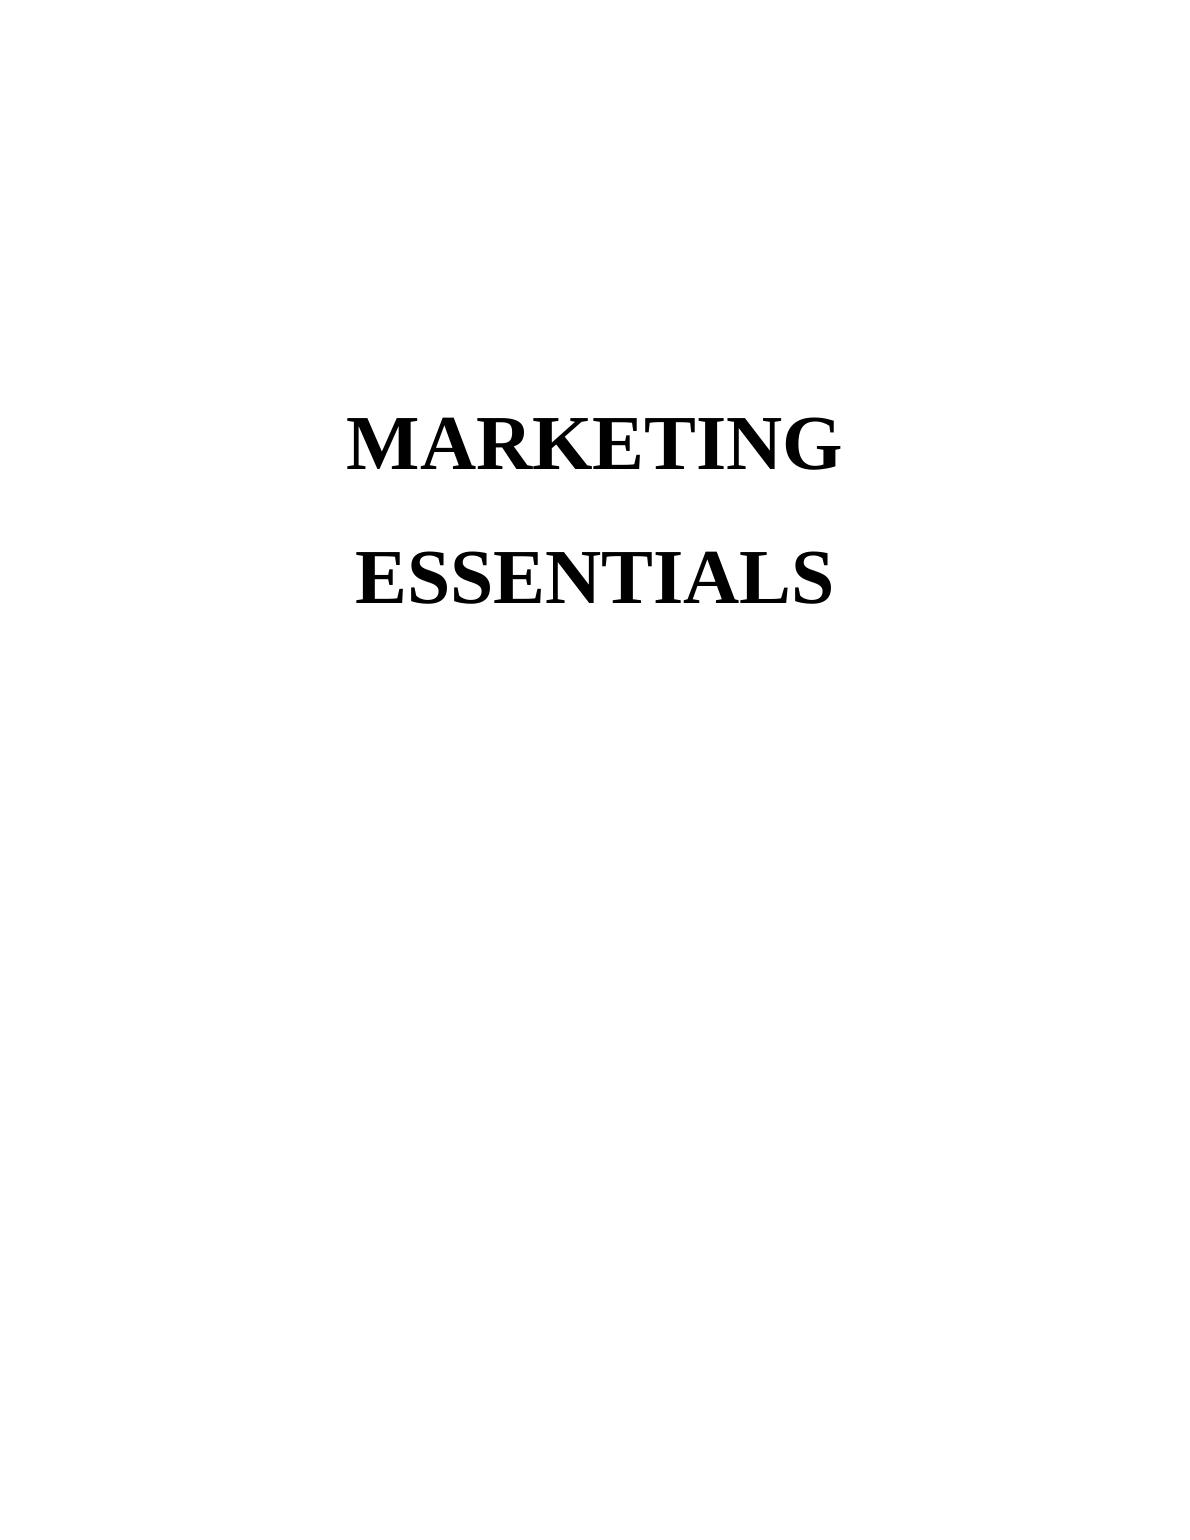 Marketing Essentials Assignment - McDonald company_1